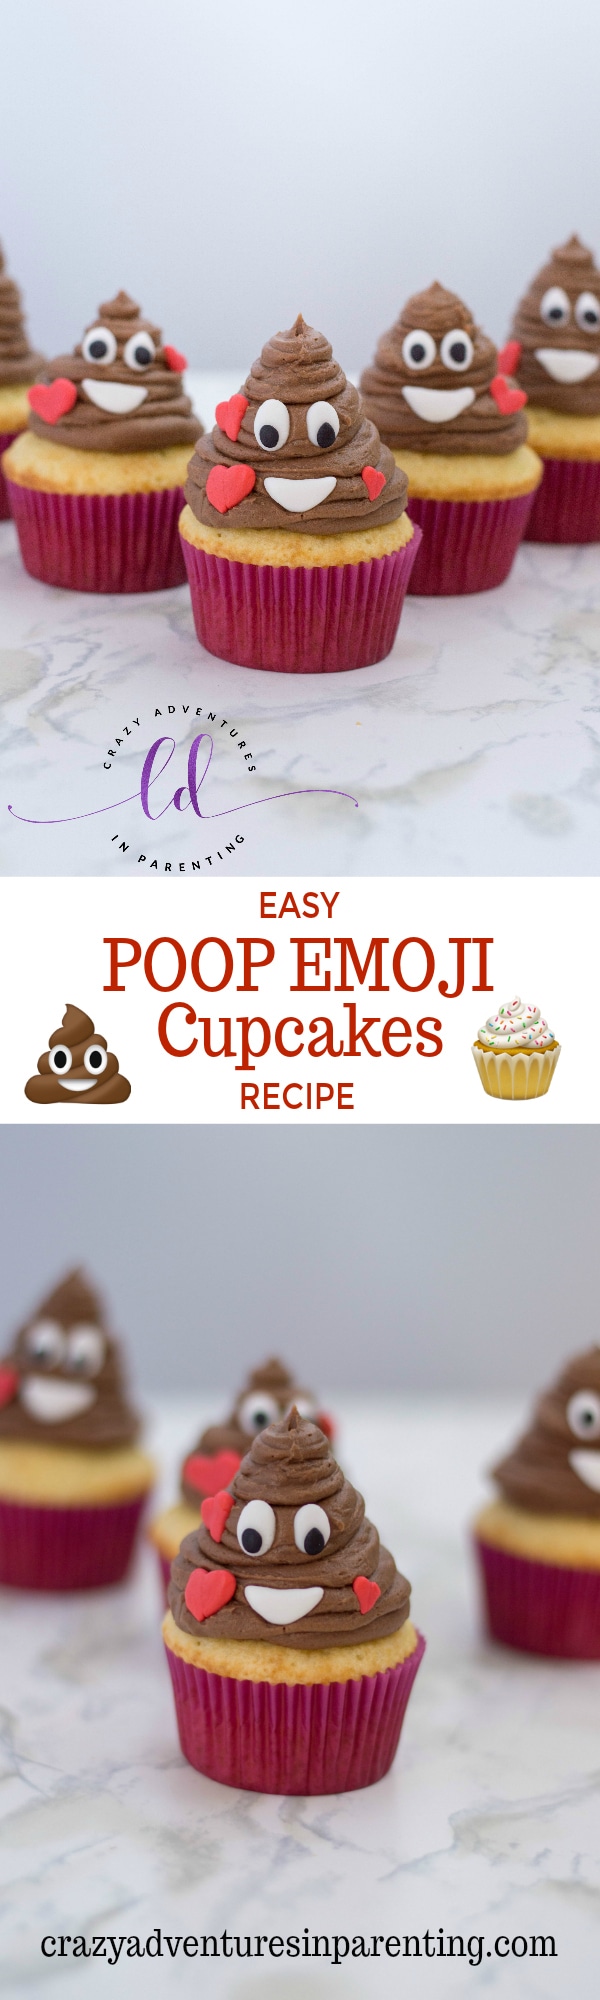 Easy Poop Emoji Cupcakes Recipe